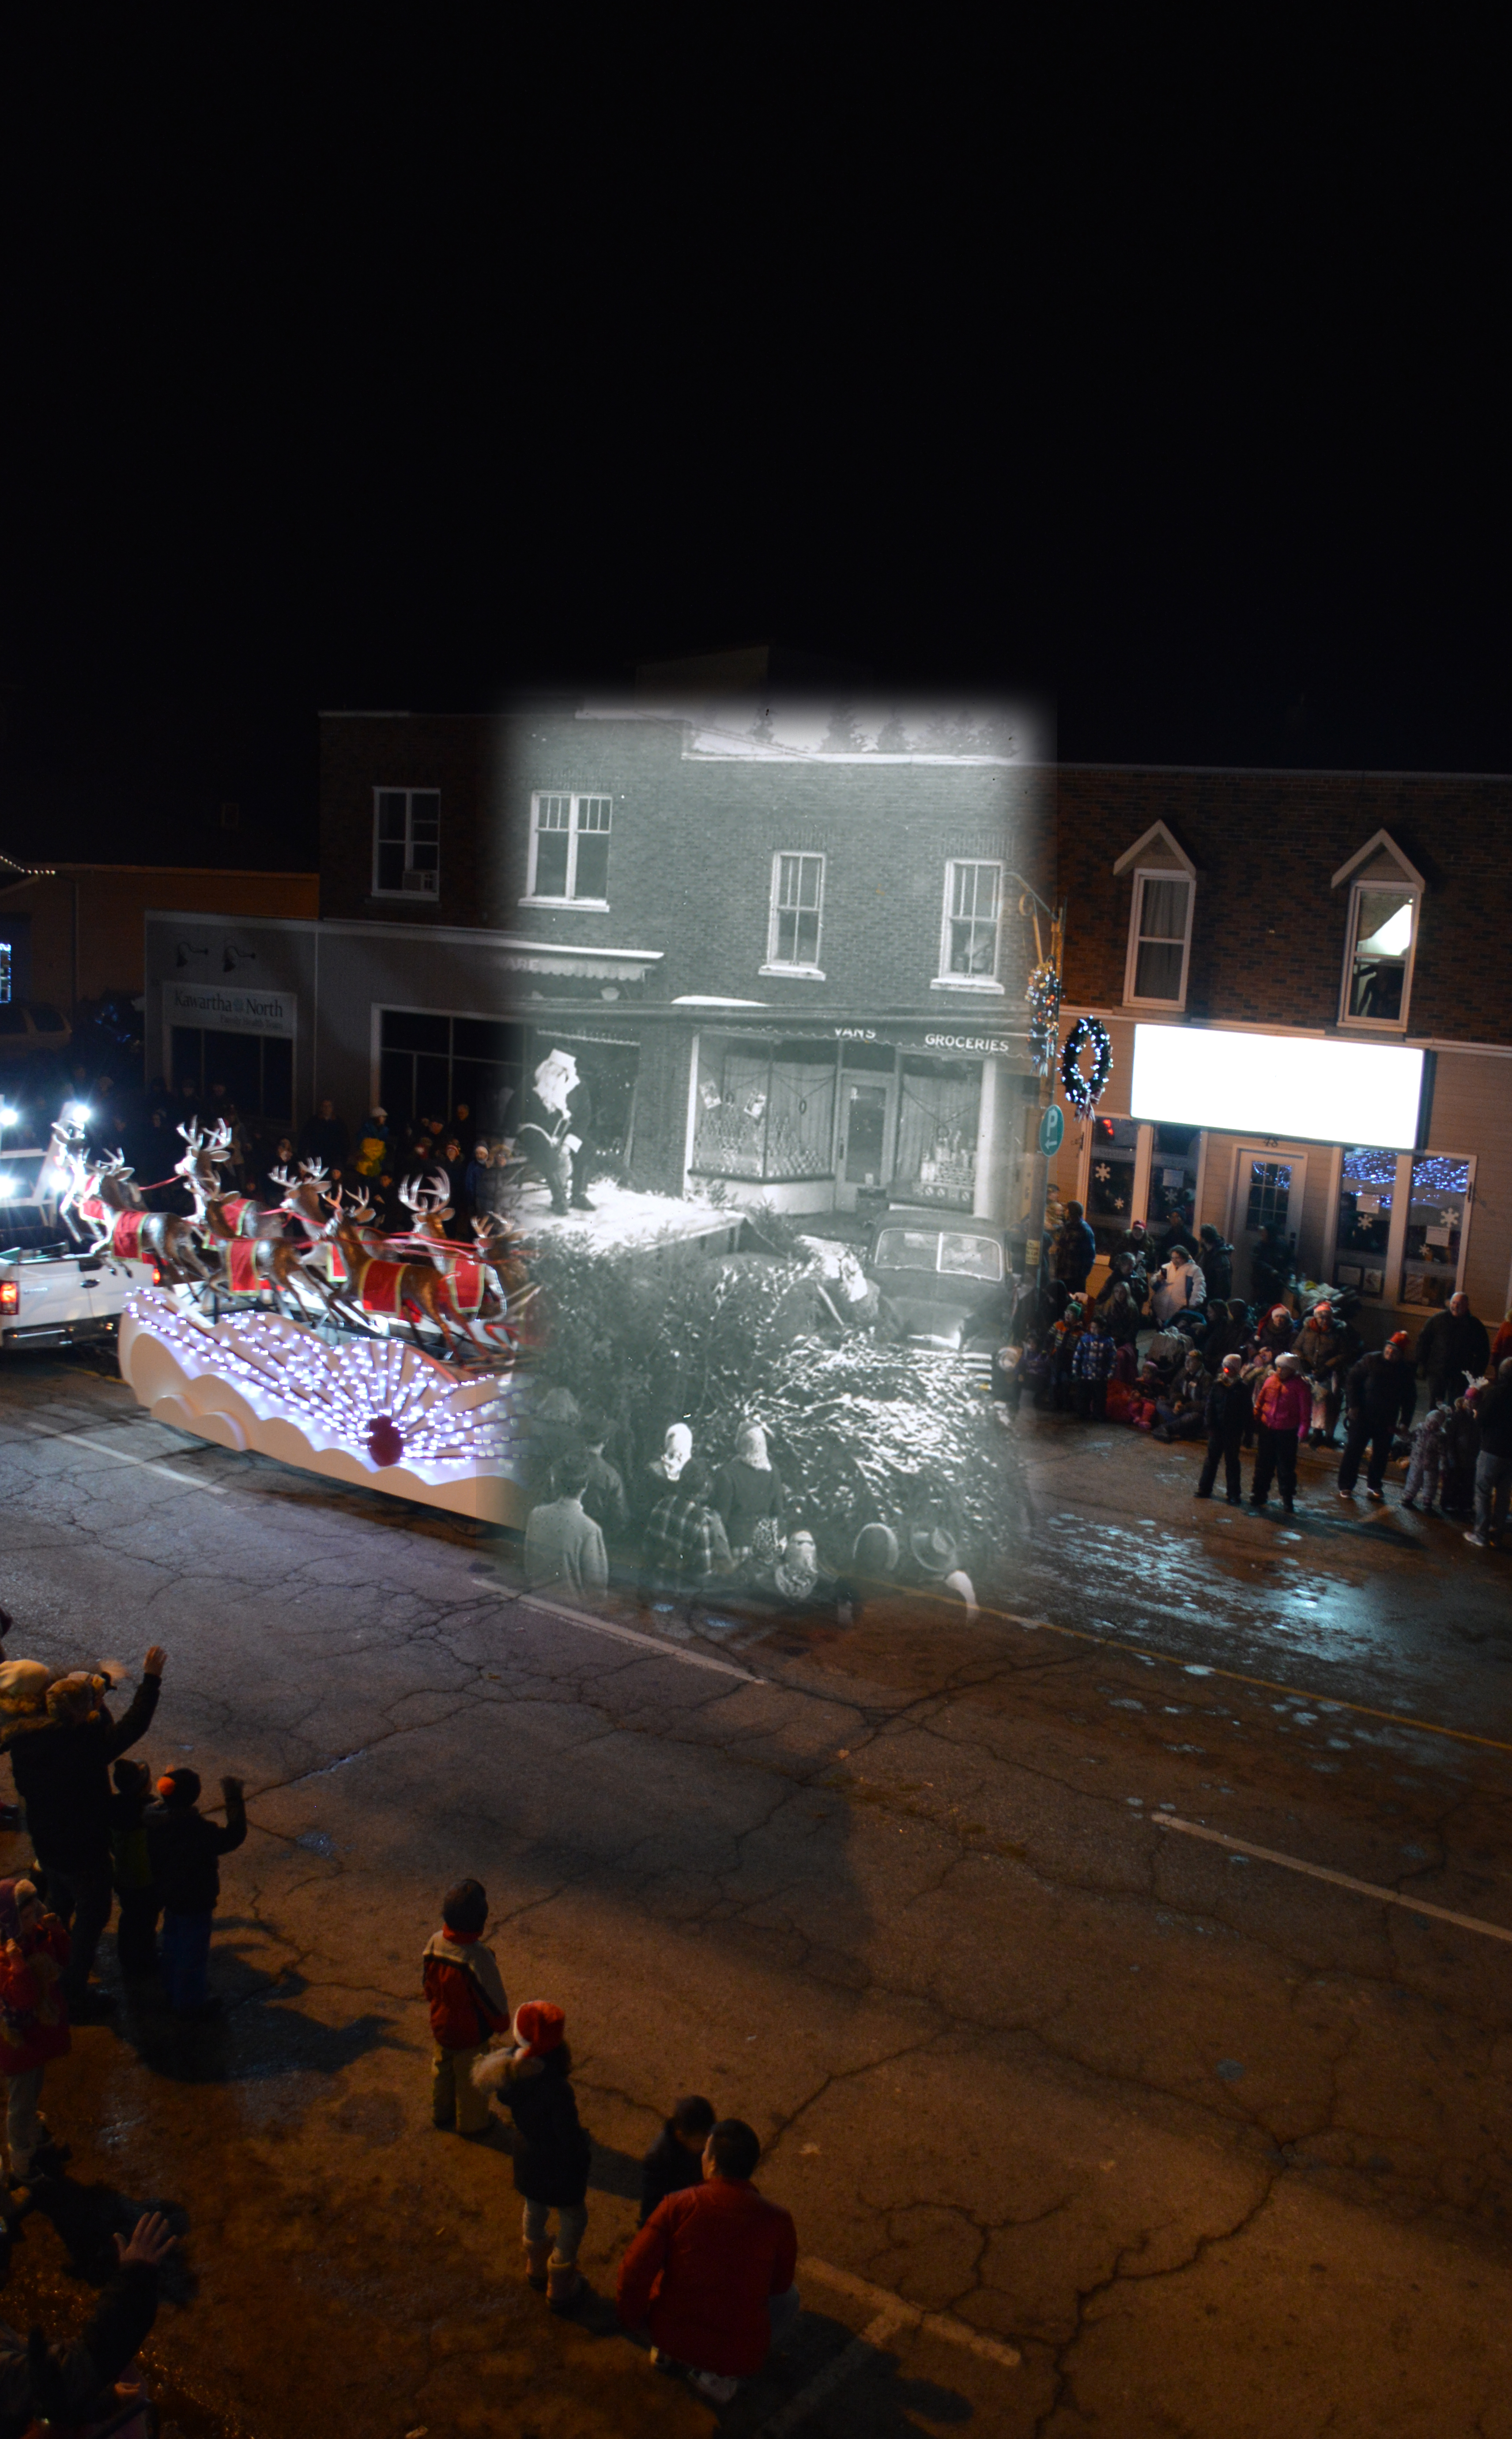 Une photo en noir et blanc de Père Noël superposée à une image contemporaine du défilé annuel de Noël.